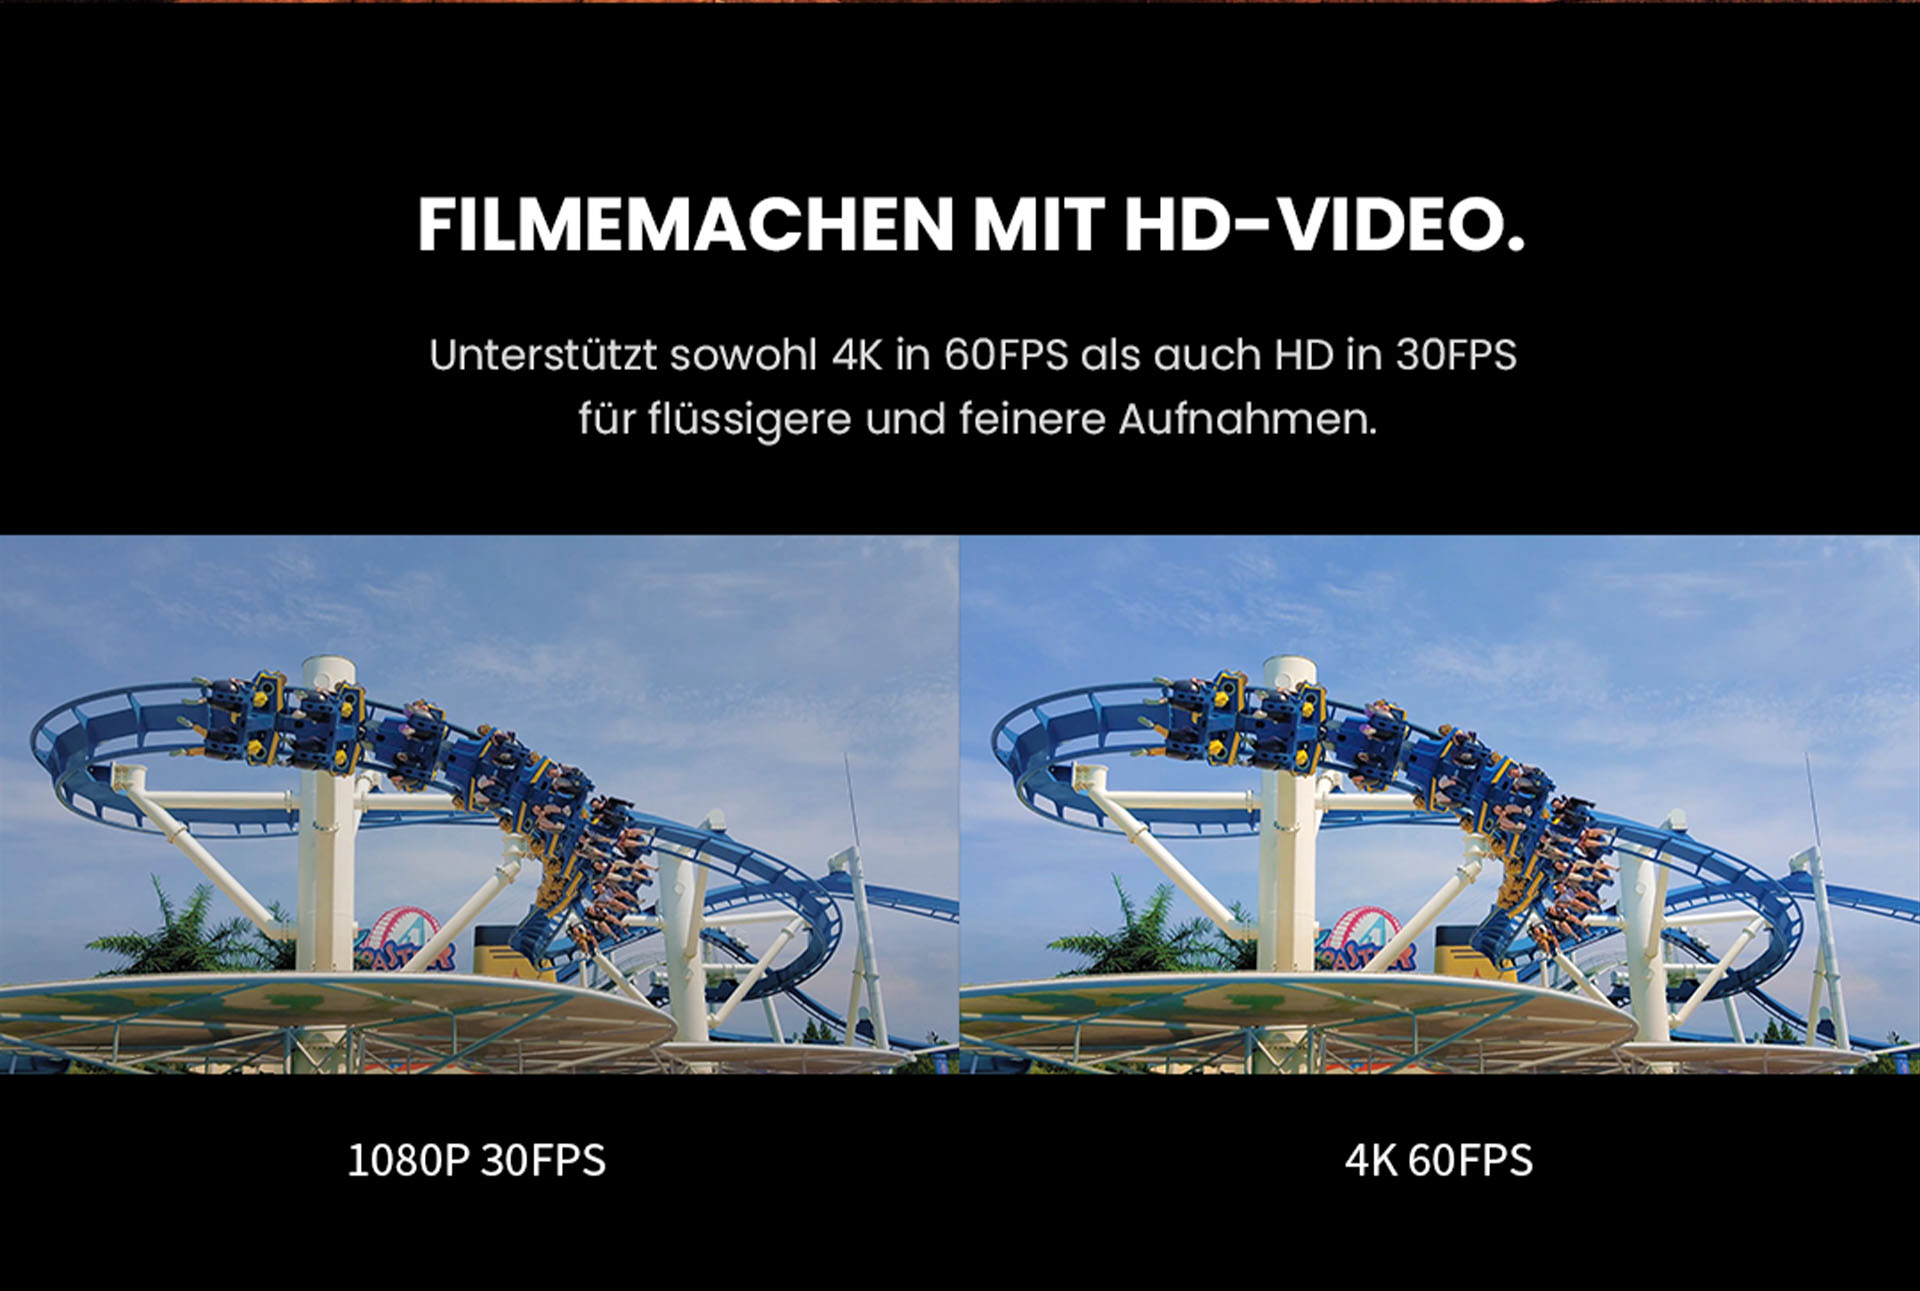 Filmemachen mit HD-Video dank des ZTE Axon 30 - Unterstützt sowohl 4K in 60fps als auch HD in 30fps für flüssigere und feinere Aufnahmen